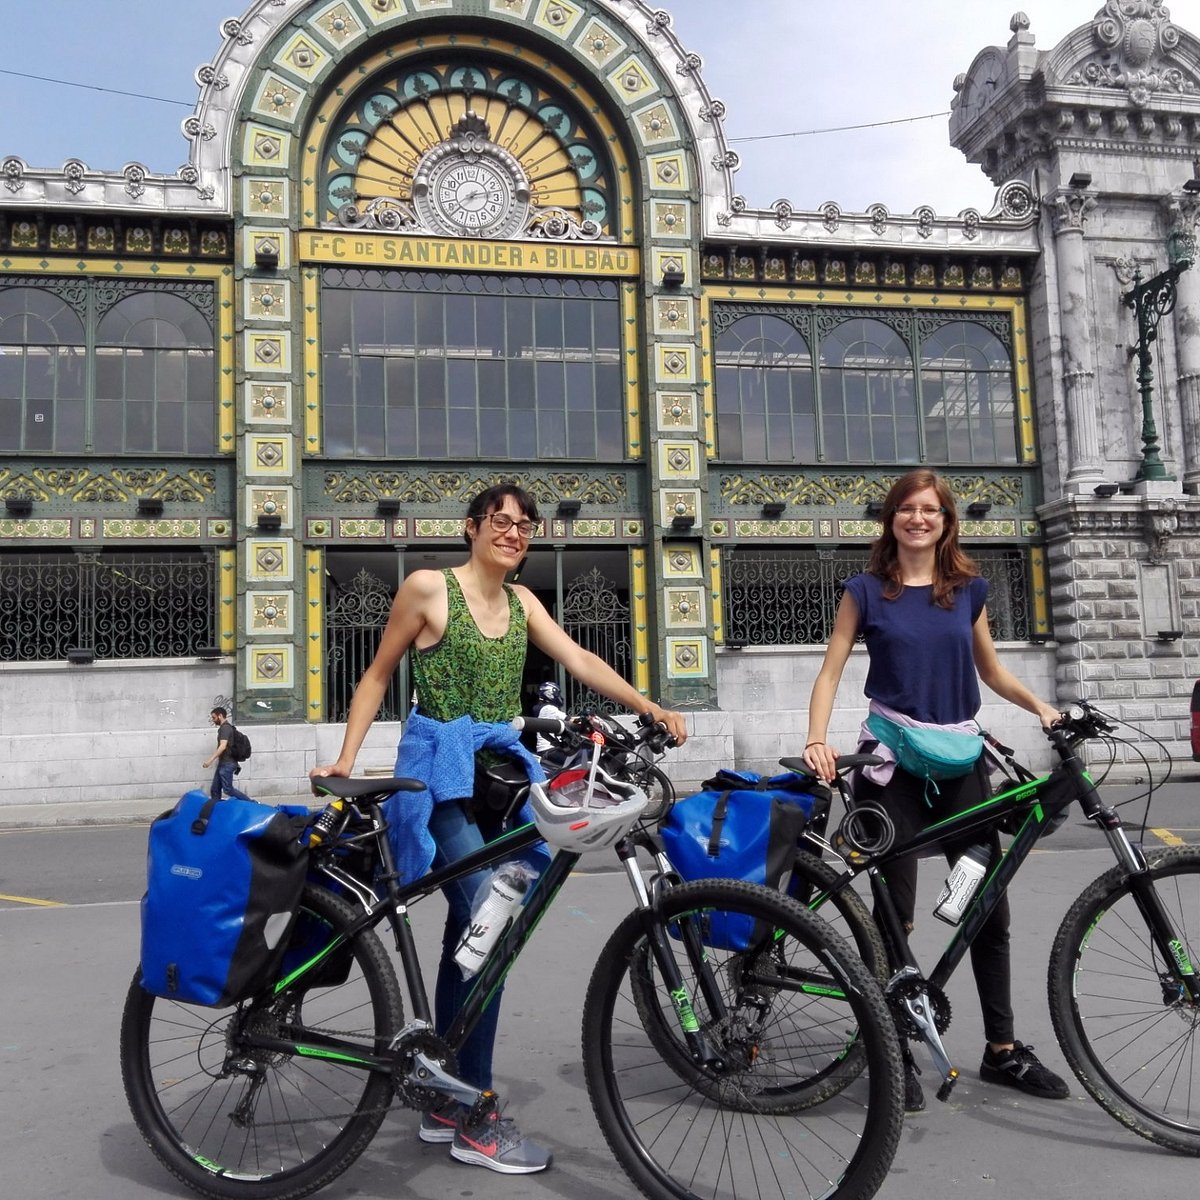 Onvoorziene omstandigheden Matroos restjes Urban Bike (Bilbao) - 2023 Alles wat u moet weten VOORDAT je gaat -  Tripadvisor